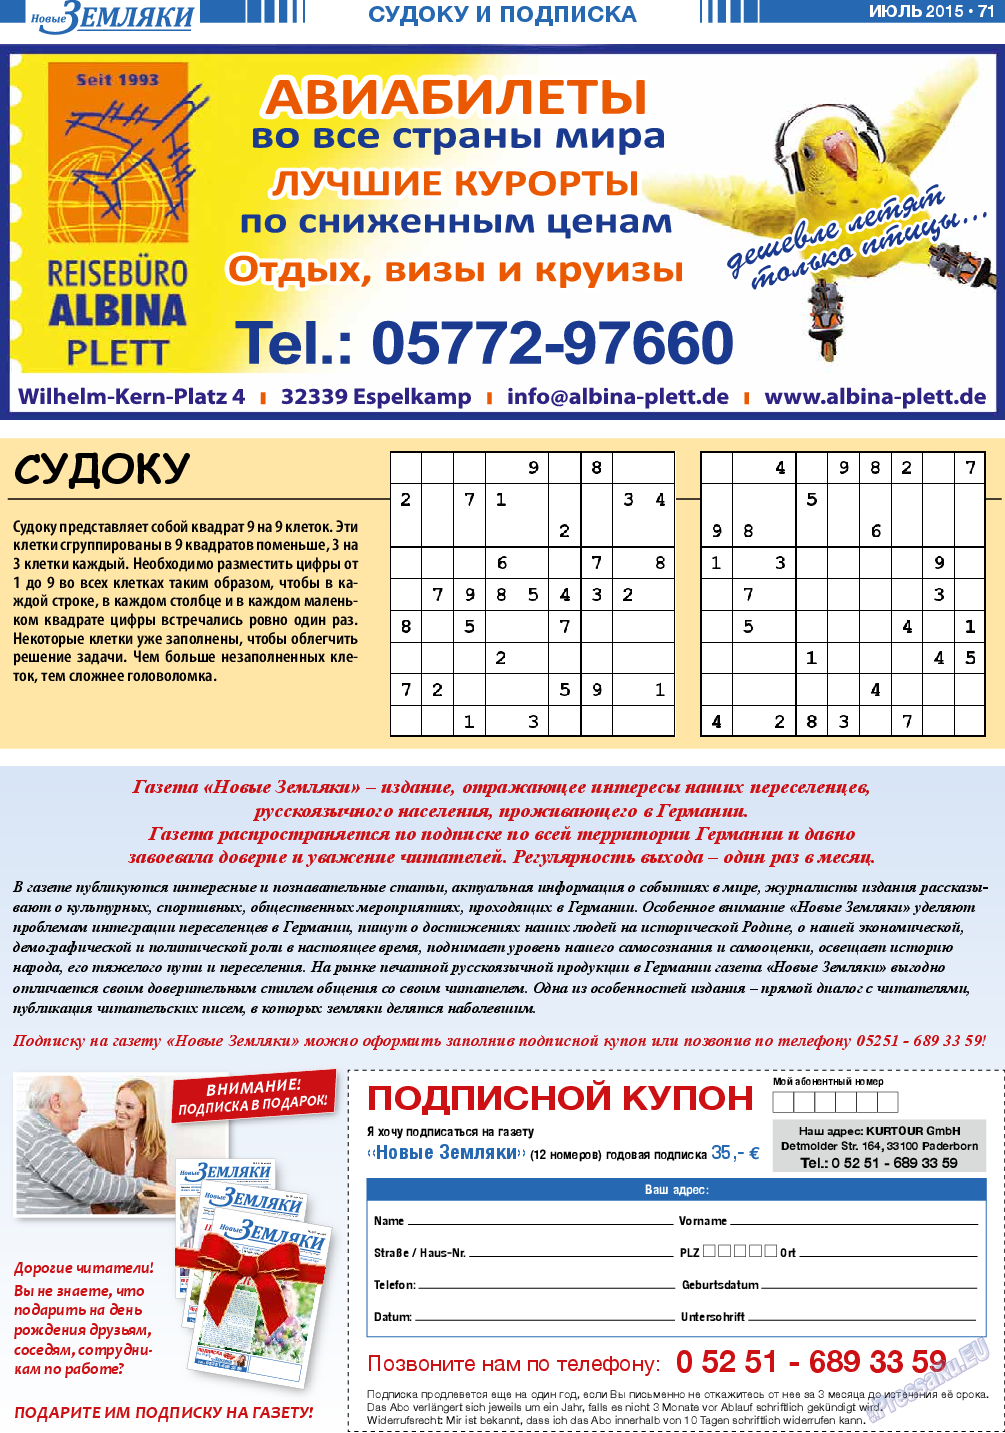 Новые Земляки, газета. 2015 №7 стр.71